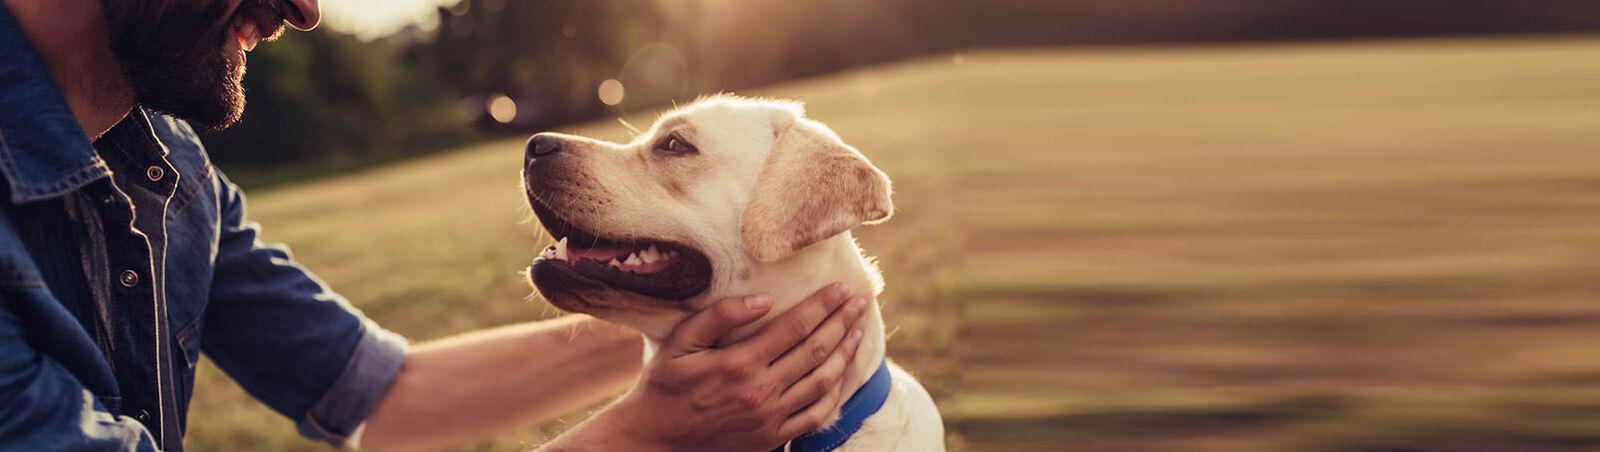 Ein Hund schaut glücklich zu seinem Halter auf, der seine Hände um den Hals des Hundes gelegt hat.